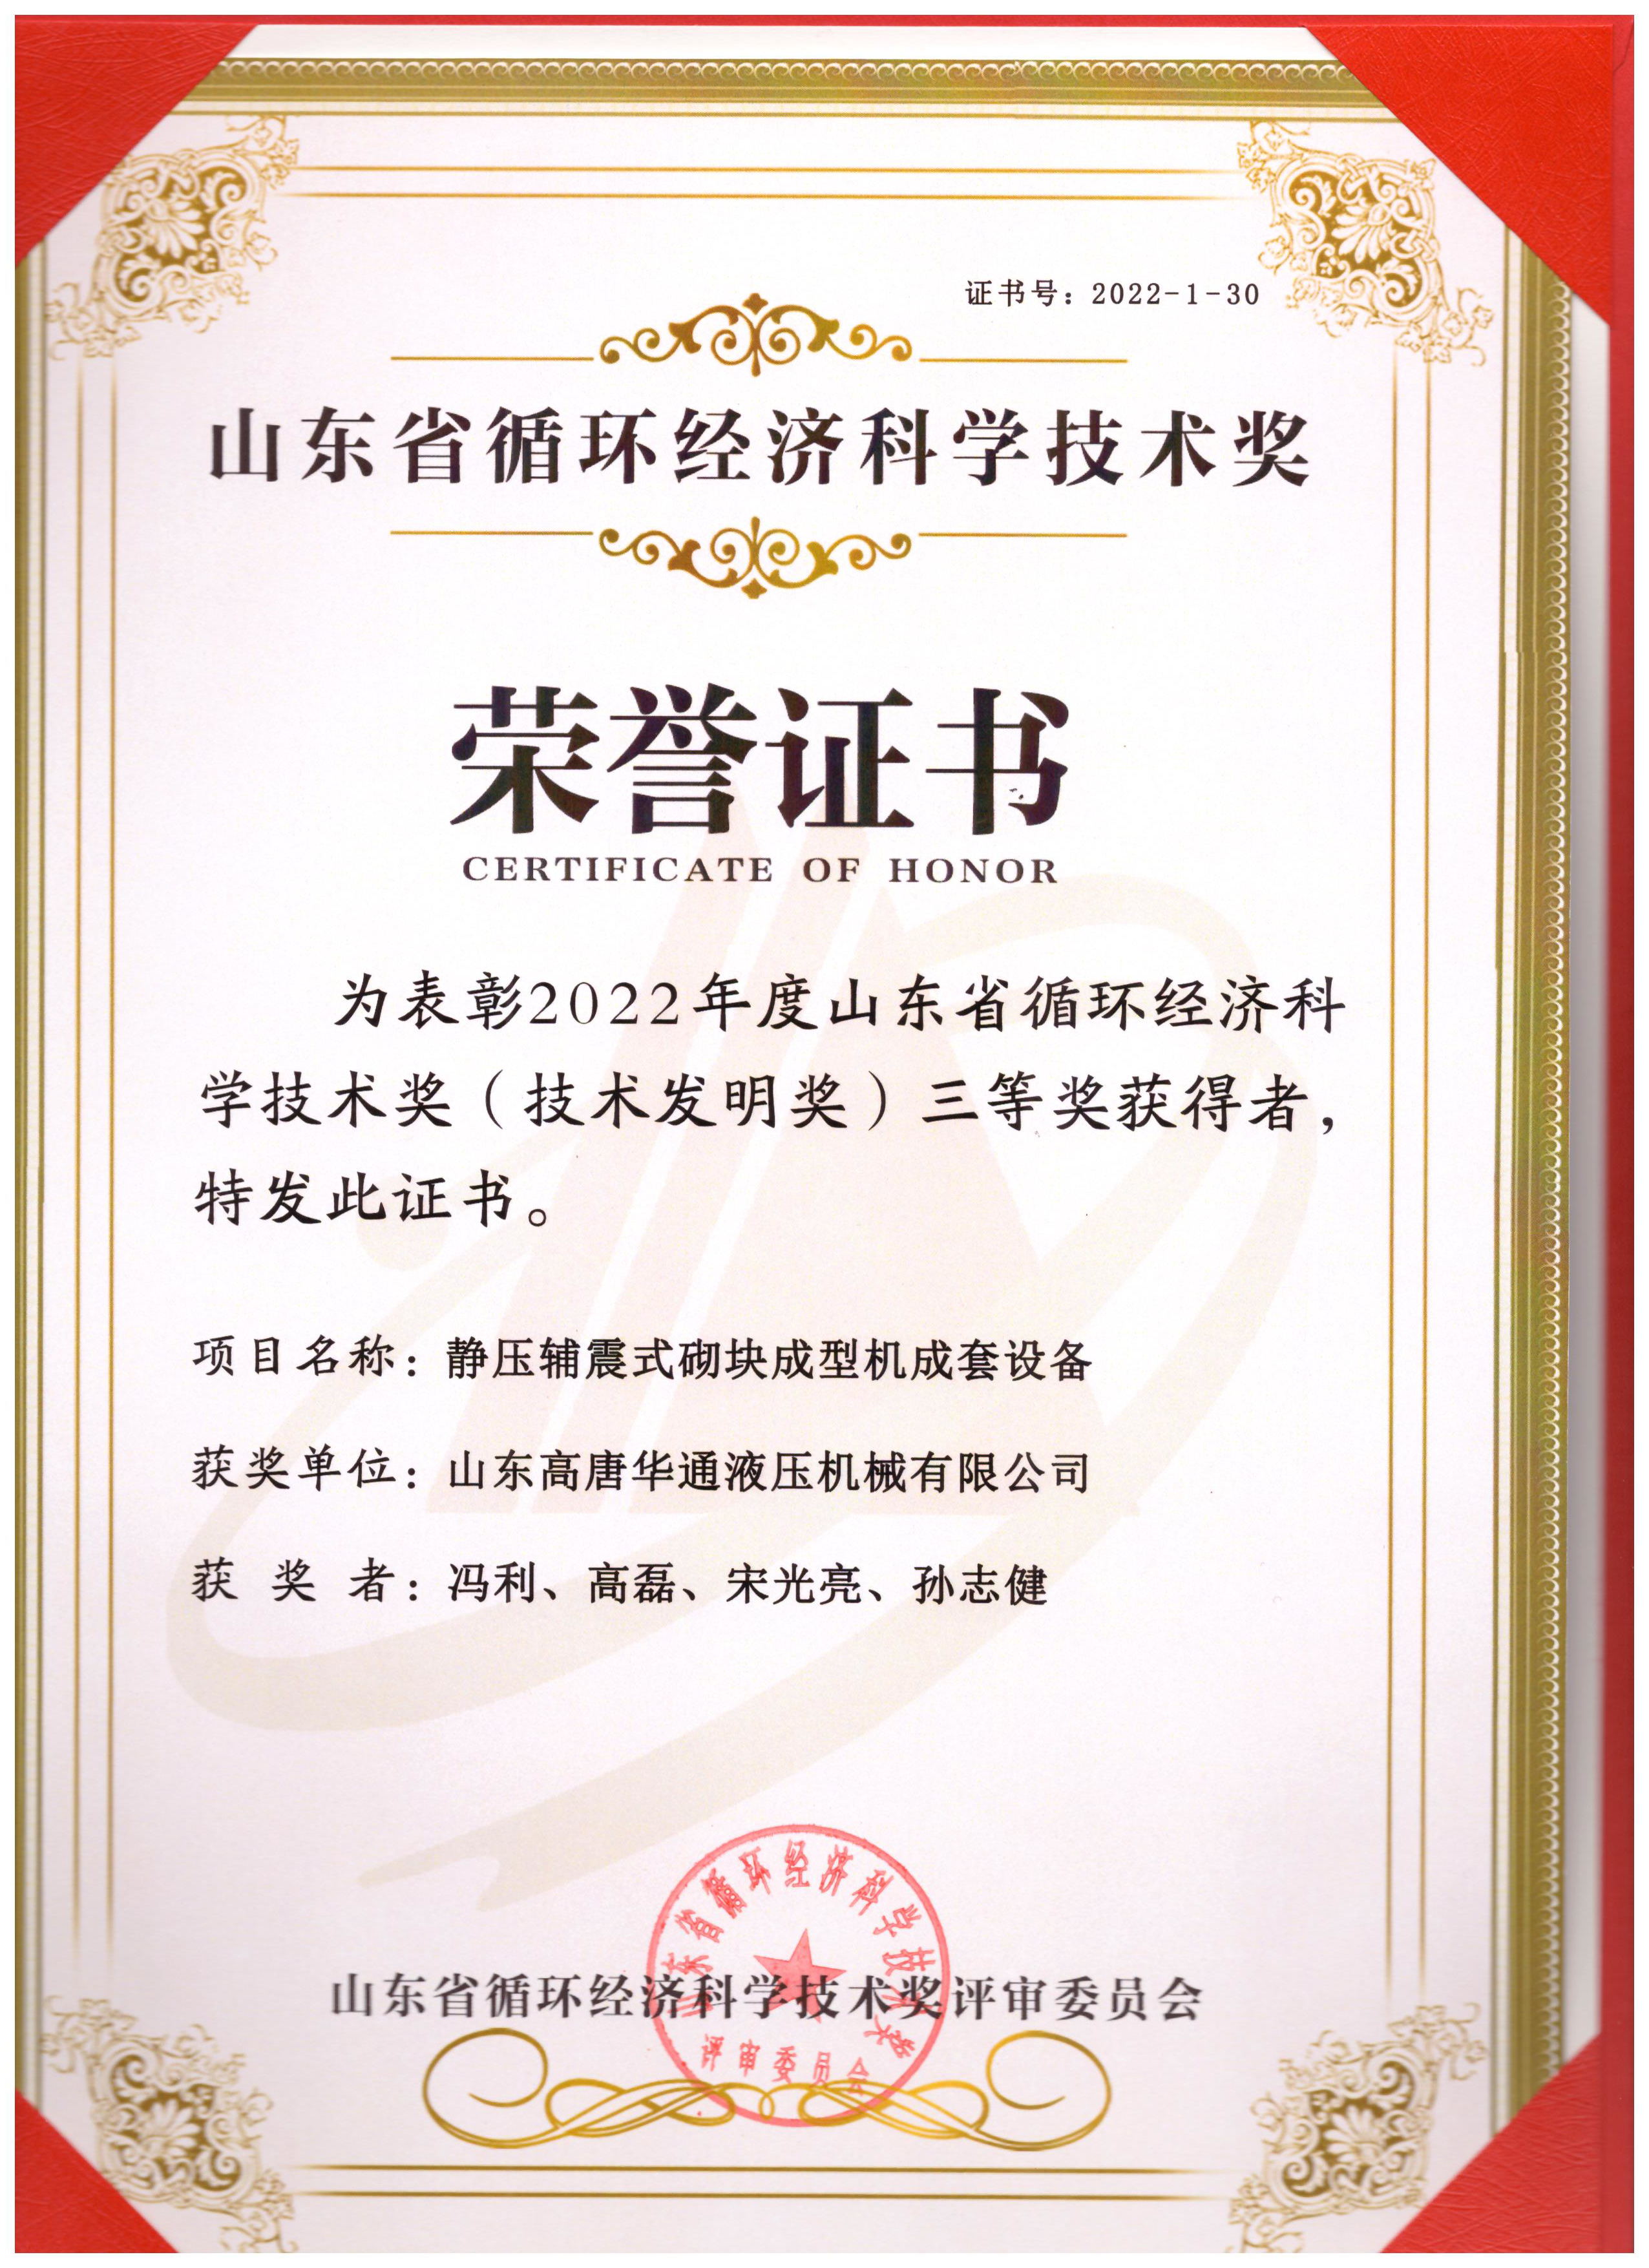 2022年度山東省循環經濟科學技術獎